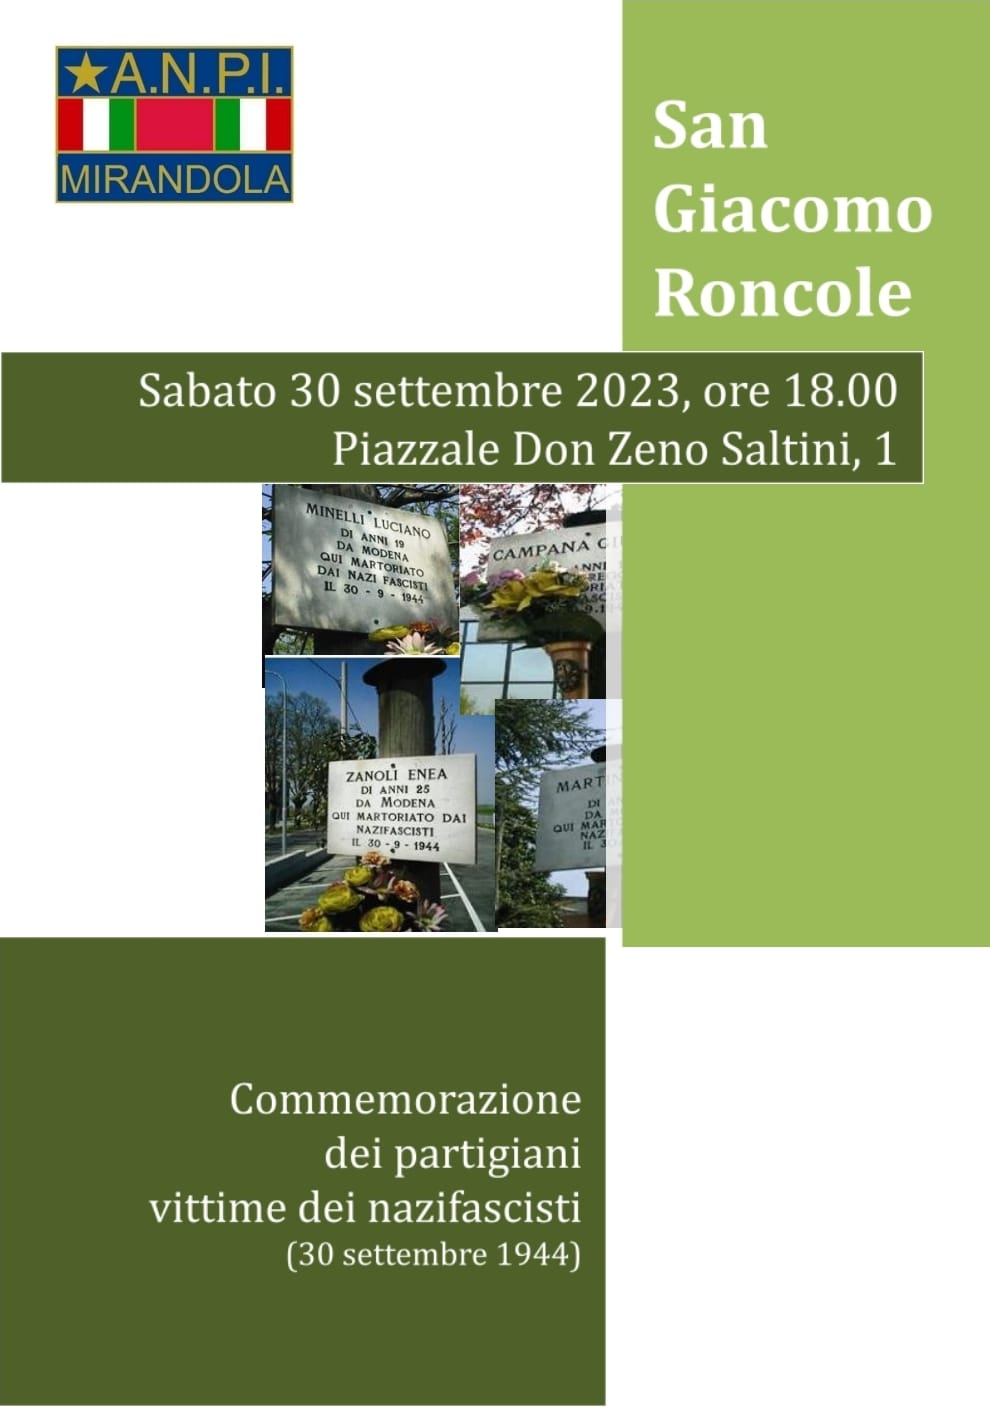 Commemorazione San Giacomo Roncole